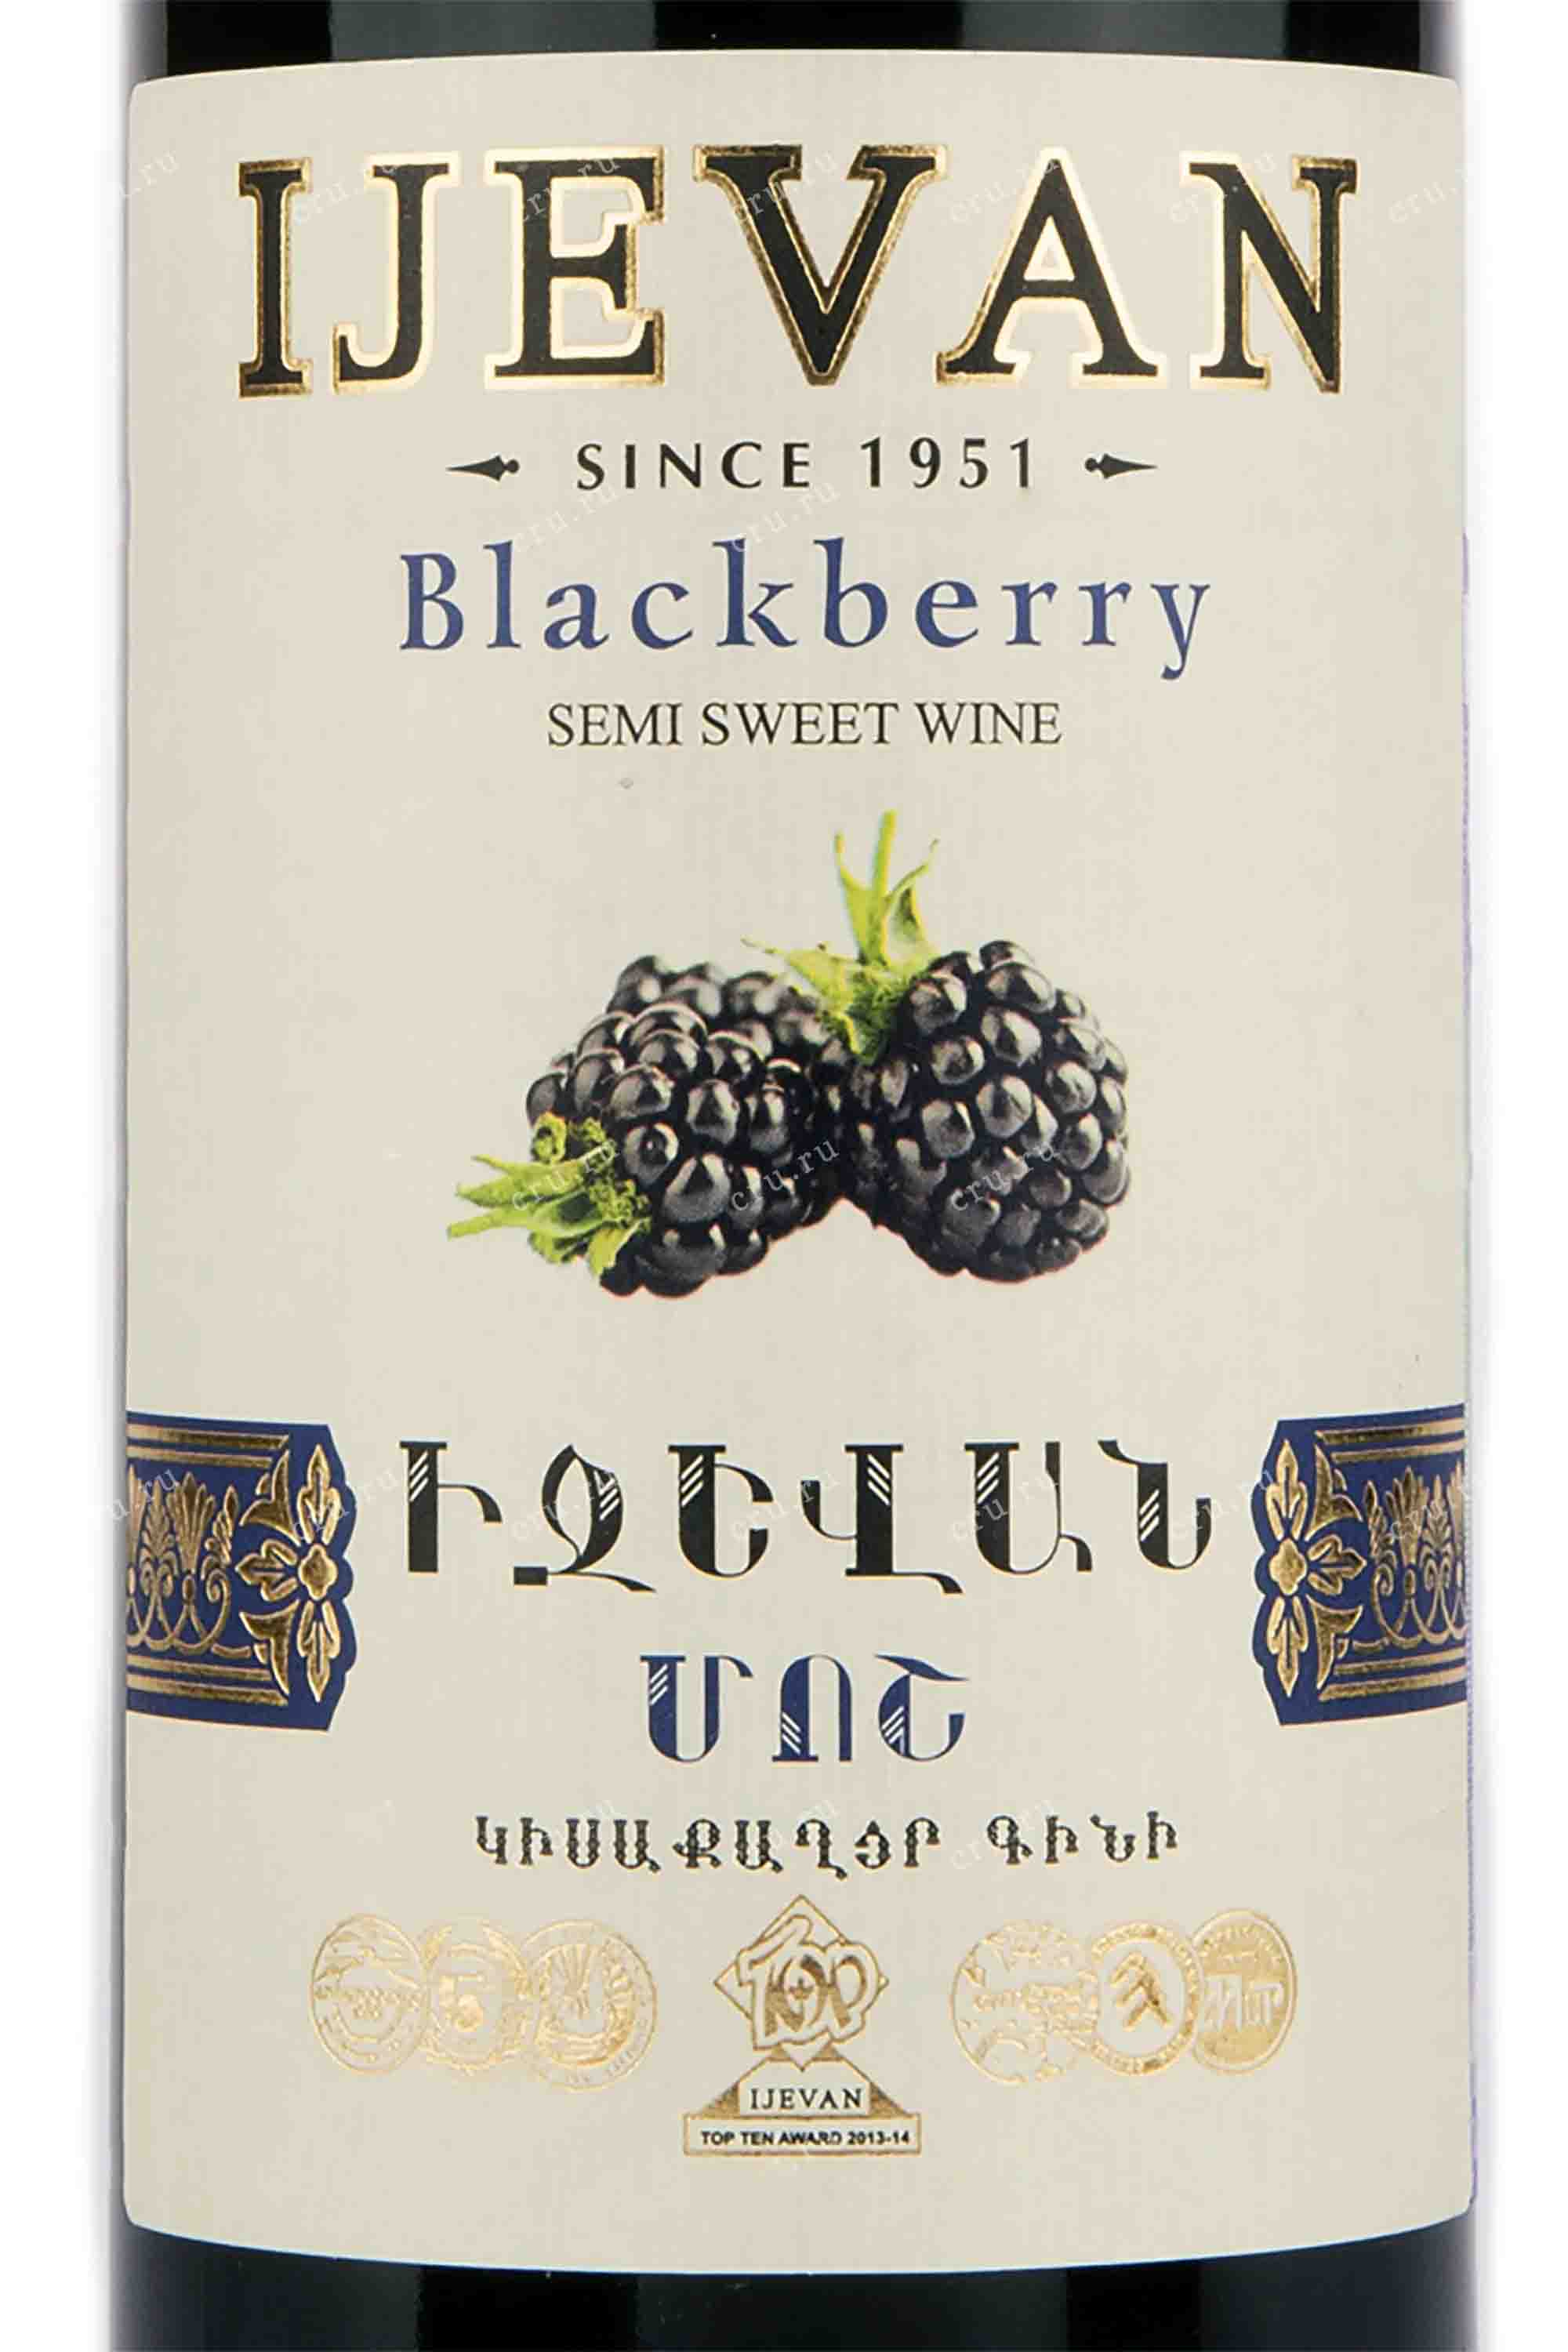 Этикетка Алкогольная продукция плодовая полусладкая "BLACKBERRY" ("Ежевика"), товарный знак "IJEVAN", креп 12%, емк 0,75л